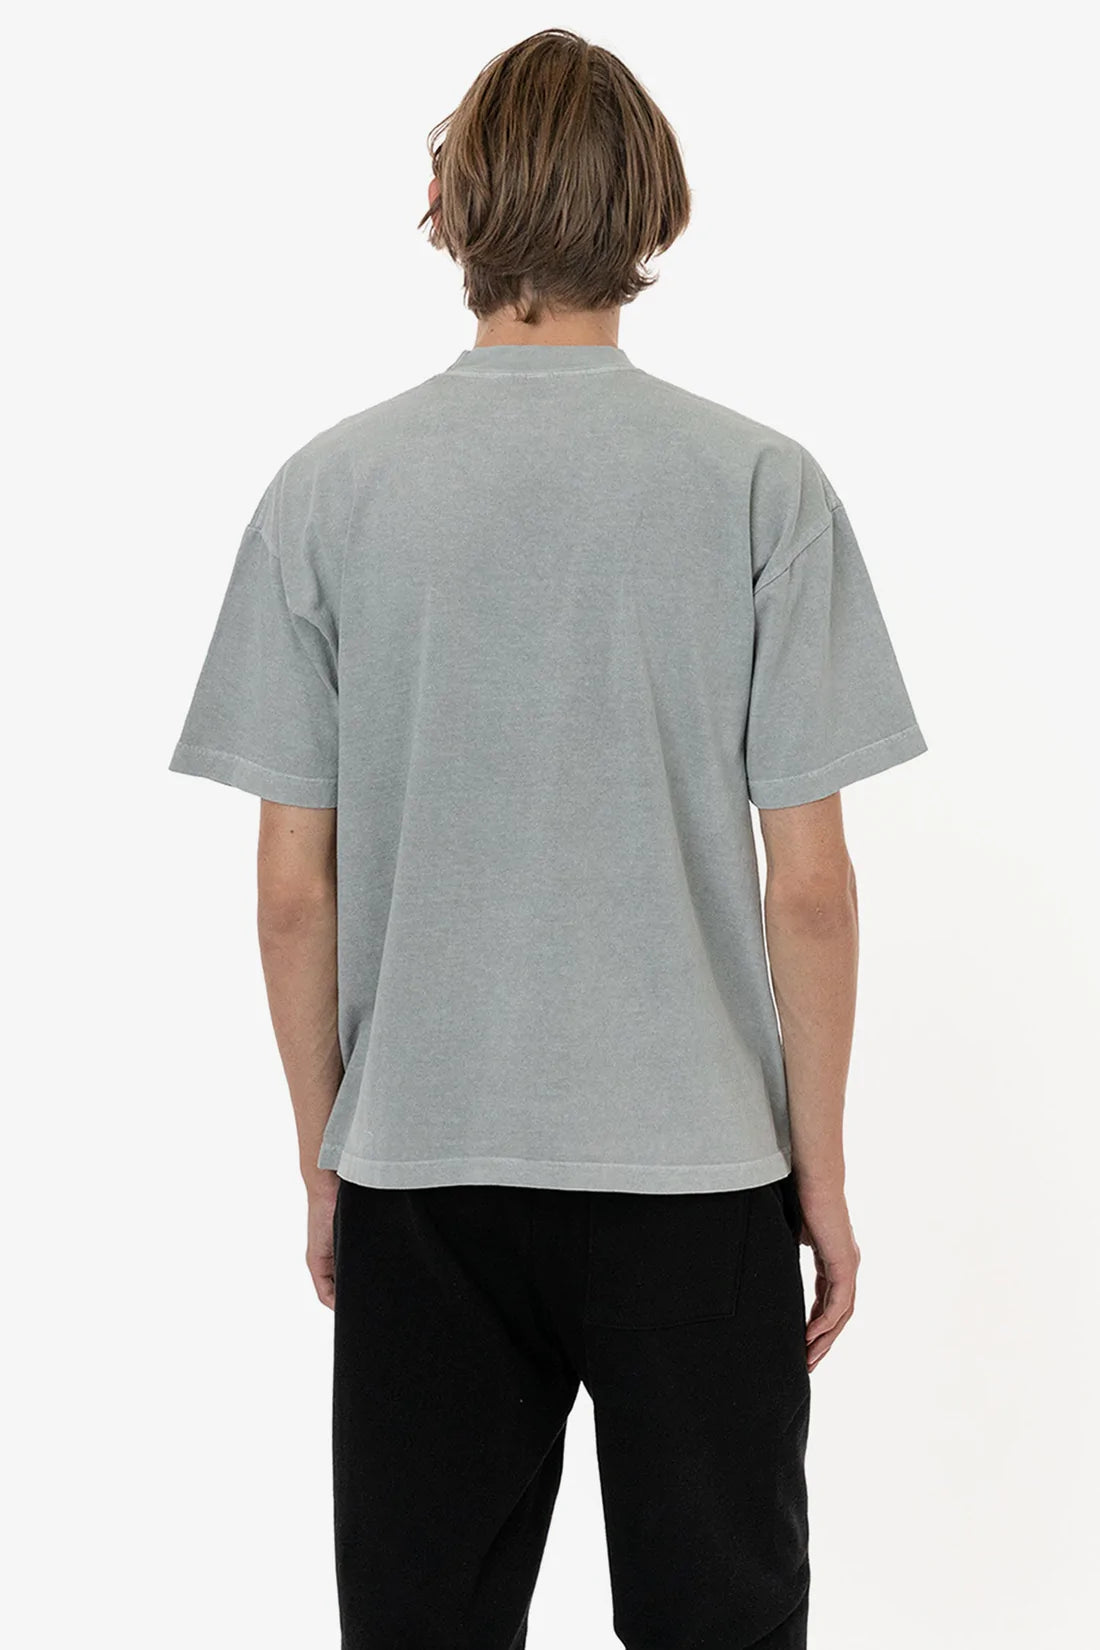 T-Shirt Dye | Wholesale Garment | Plus 6.5 A2Z x LA Crewneck Oz. T-Shirt Size Apparel Apparel Mona –